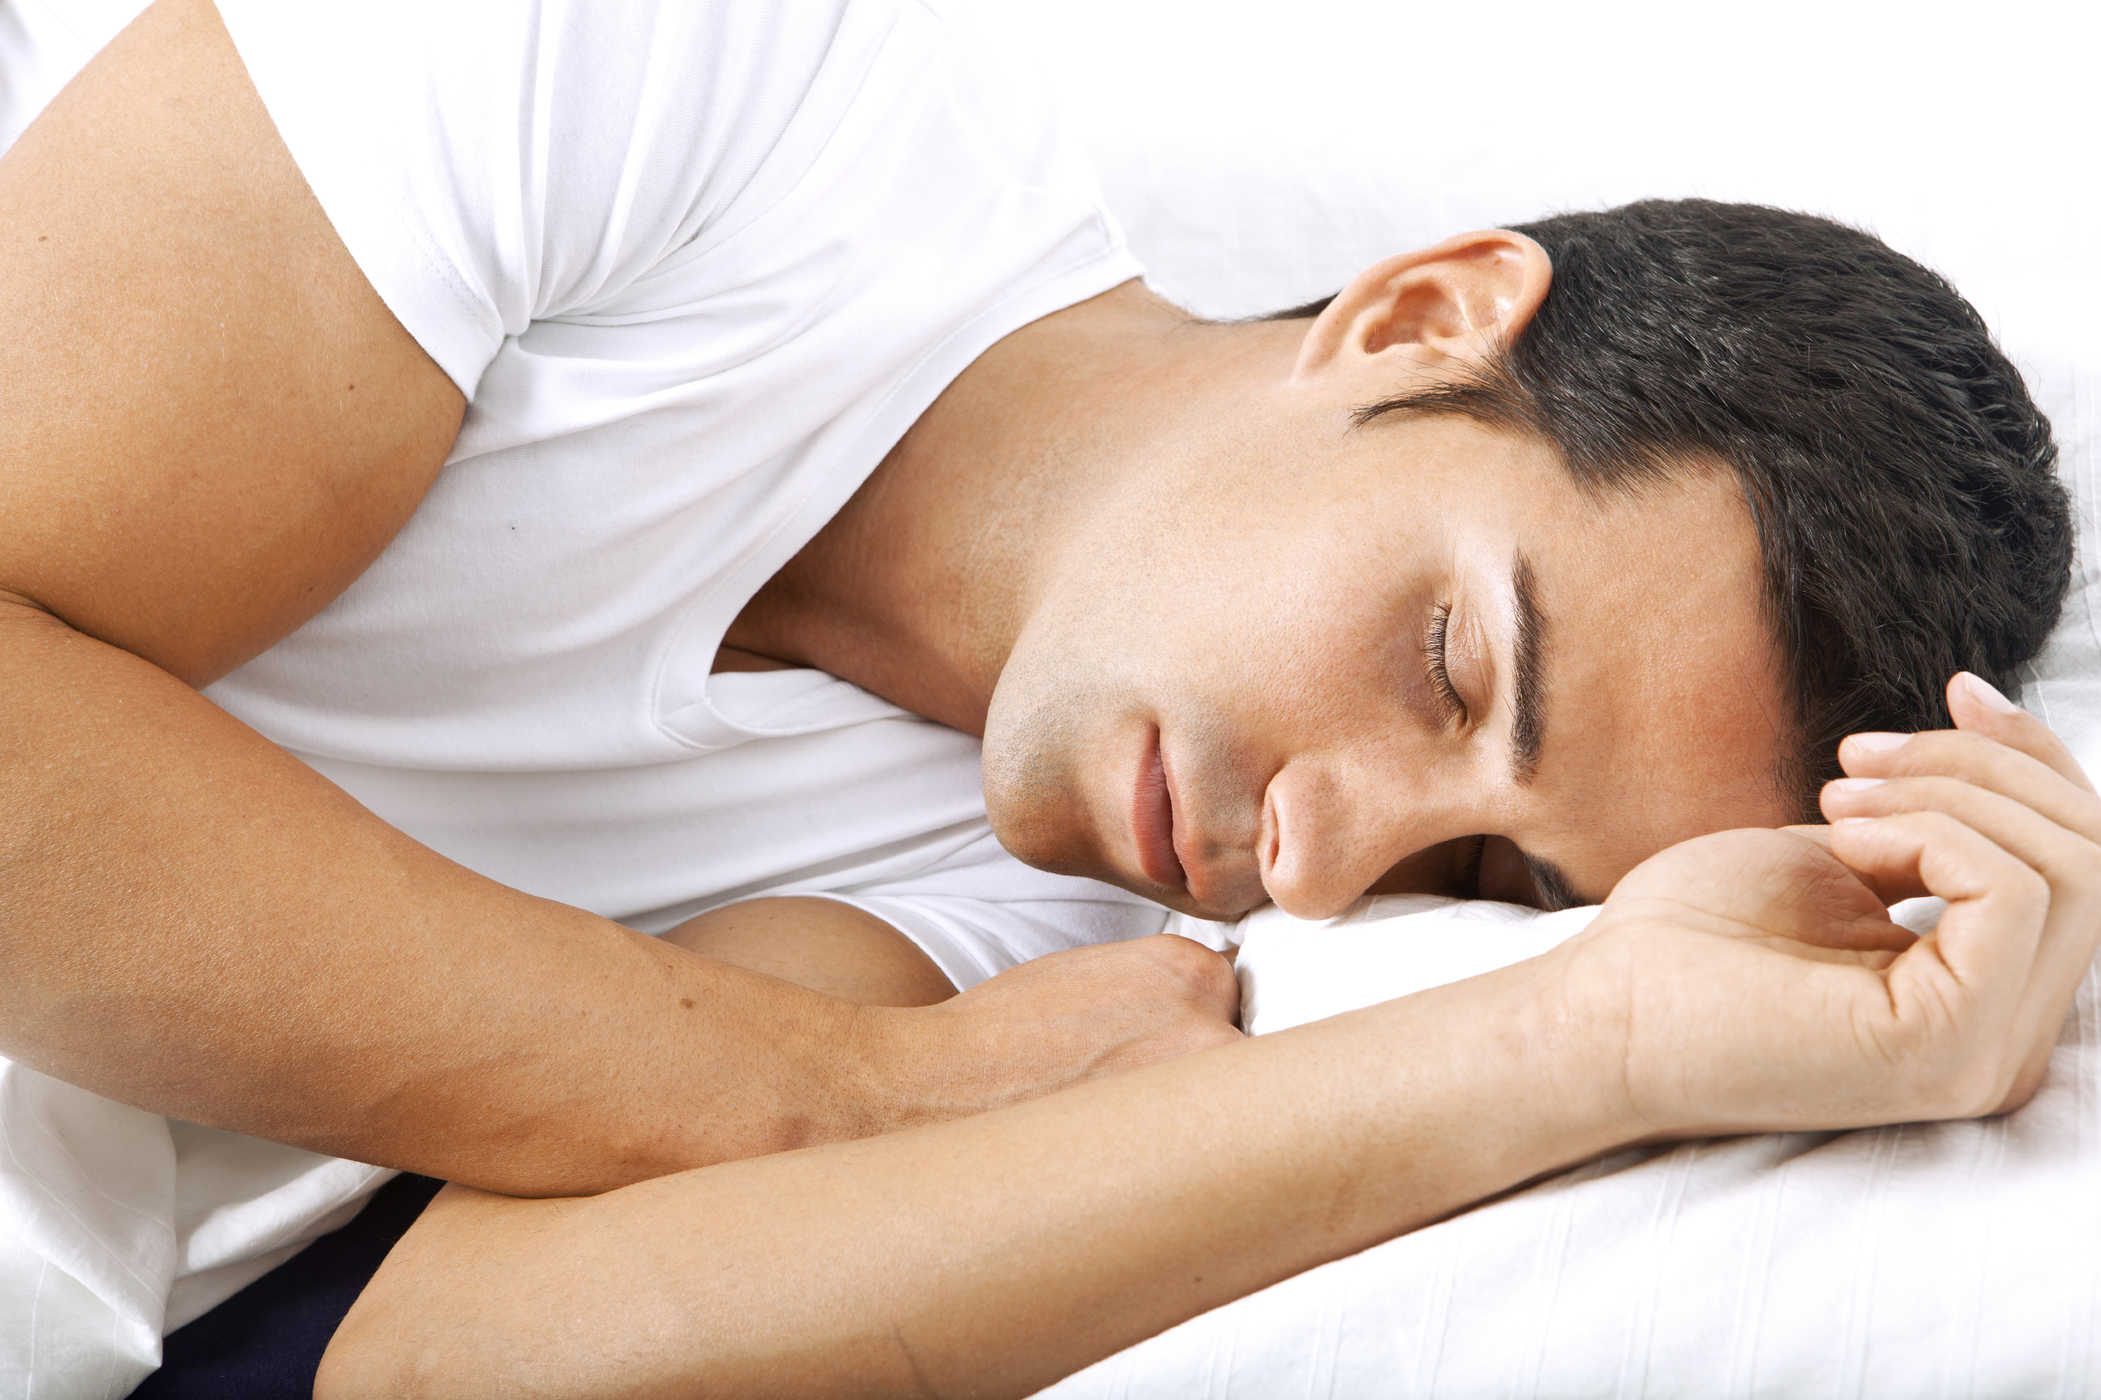 sovskönhetssyndrom sover väldigt länge